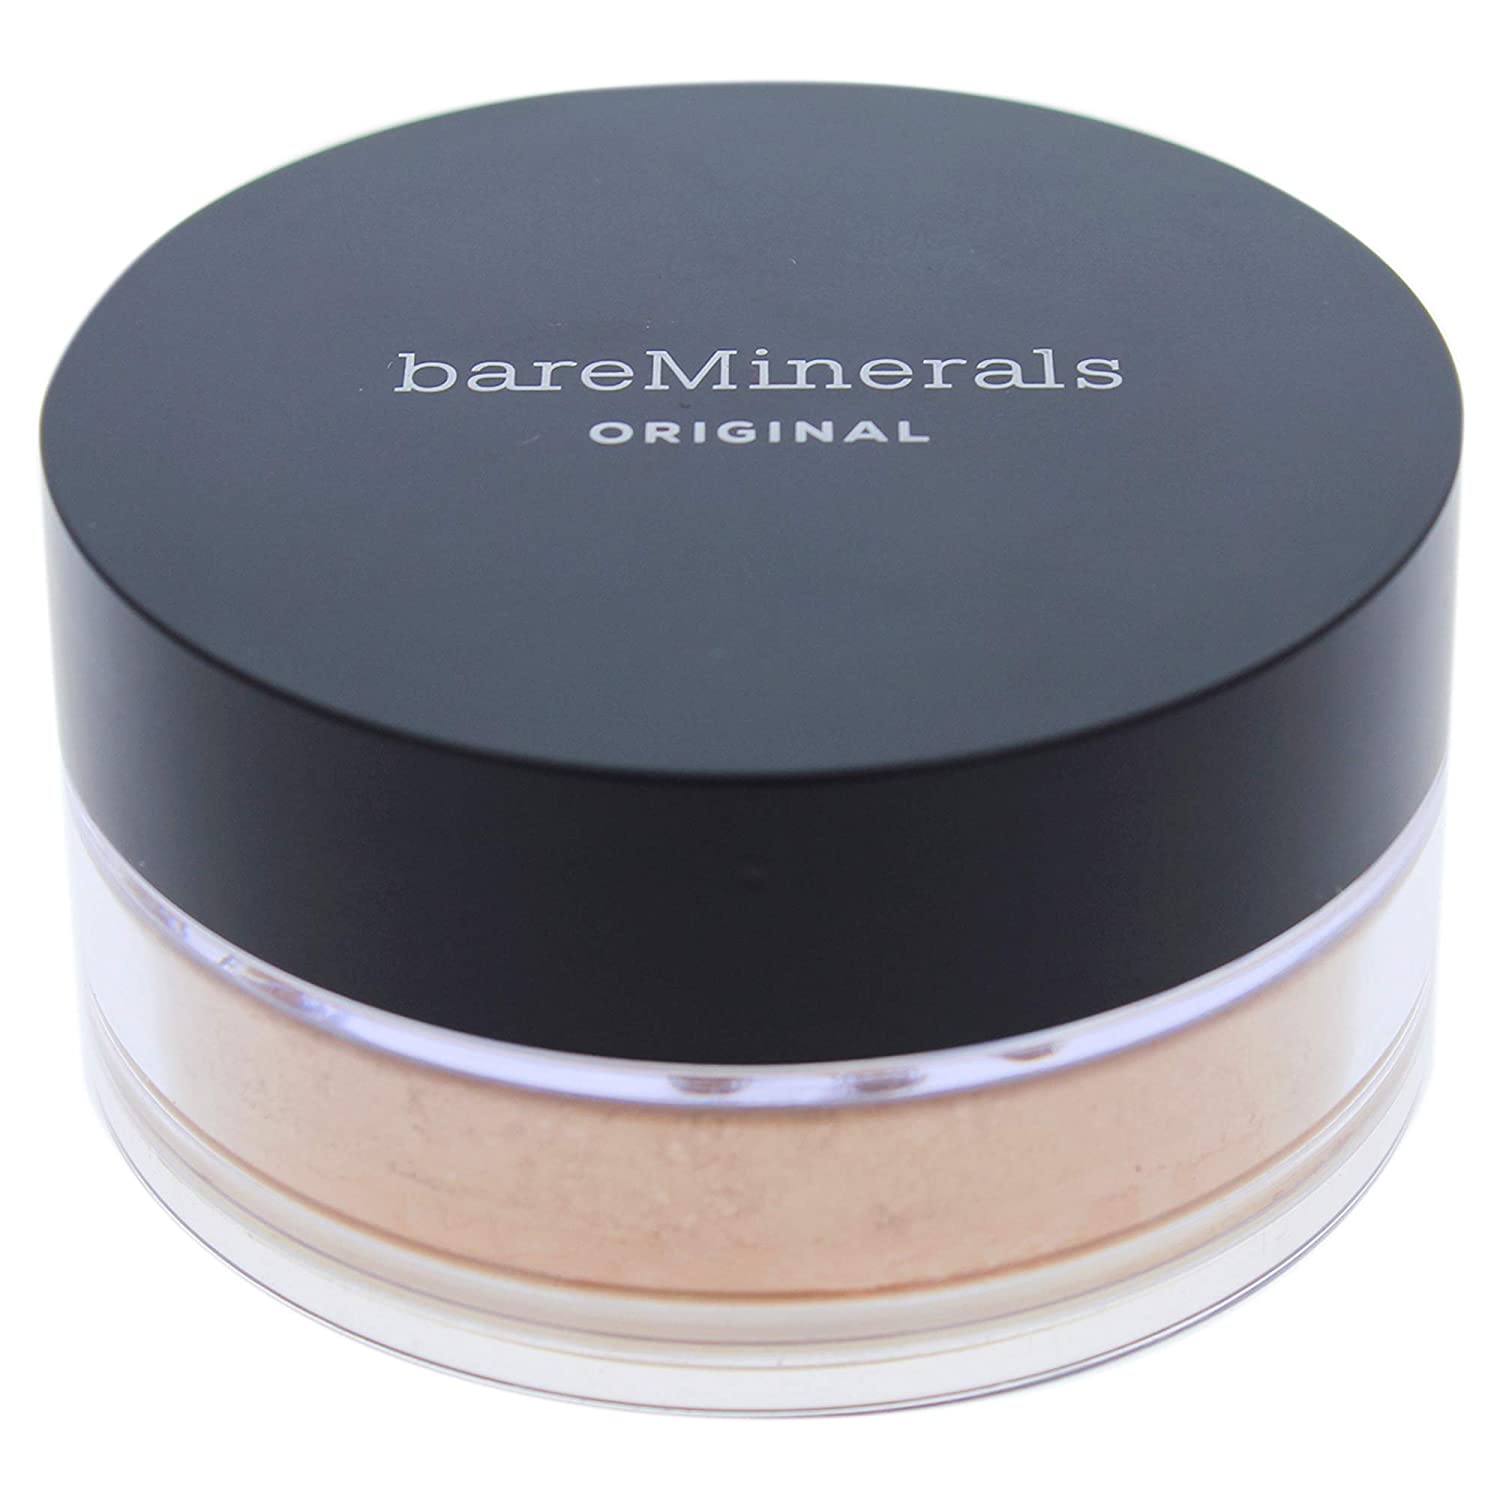 Bare Minerals - Original Foundation Spf 15 - Medium Beige 12 - 8 g / 0.28 oz